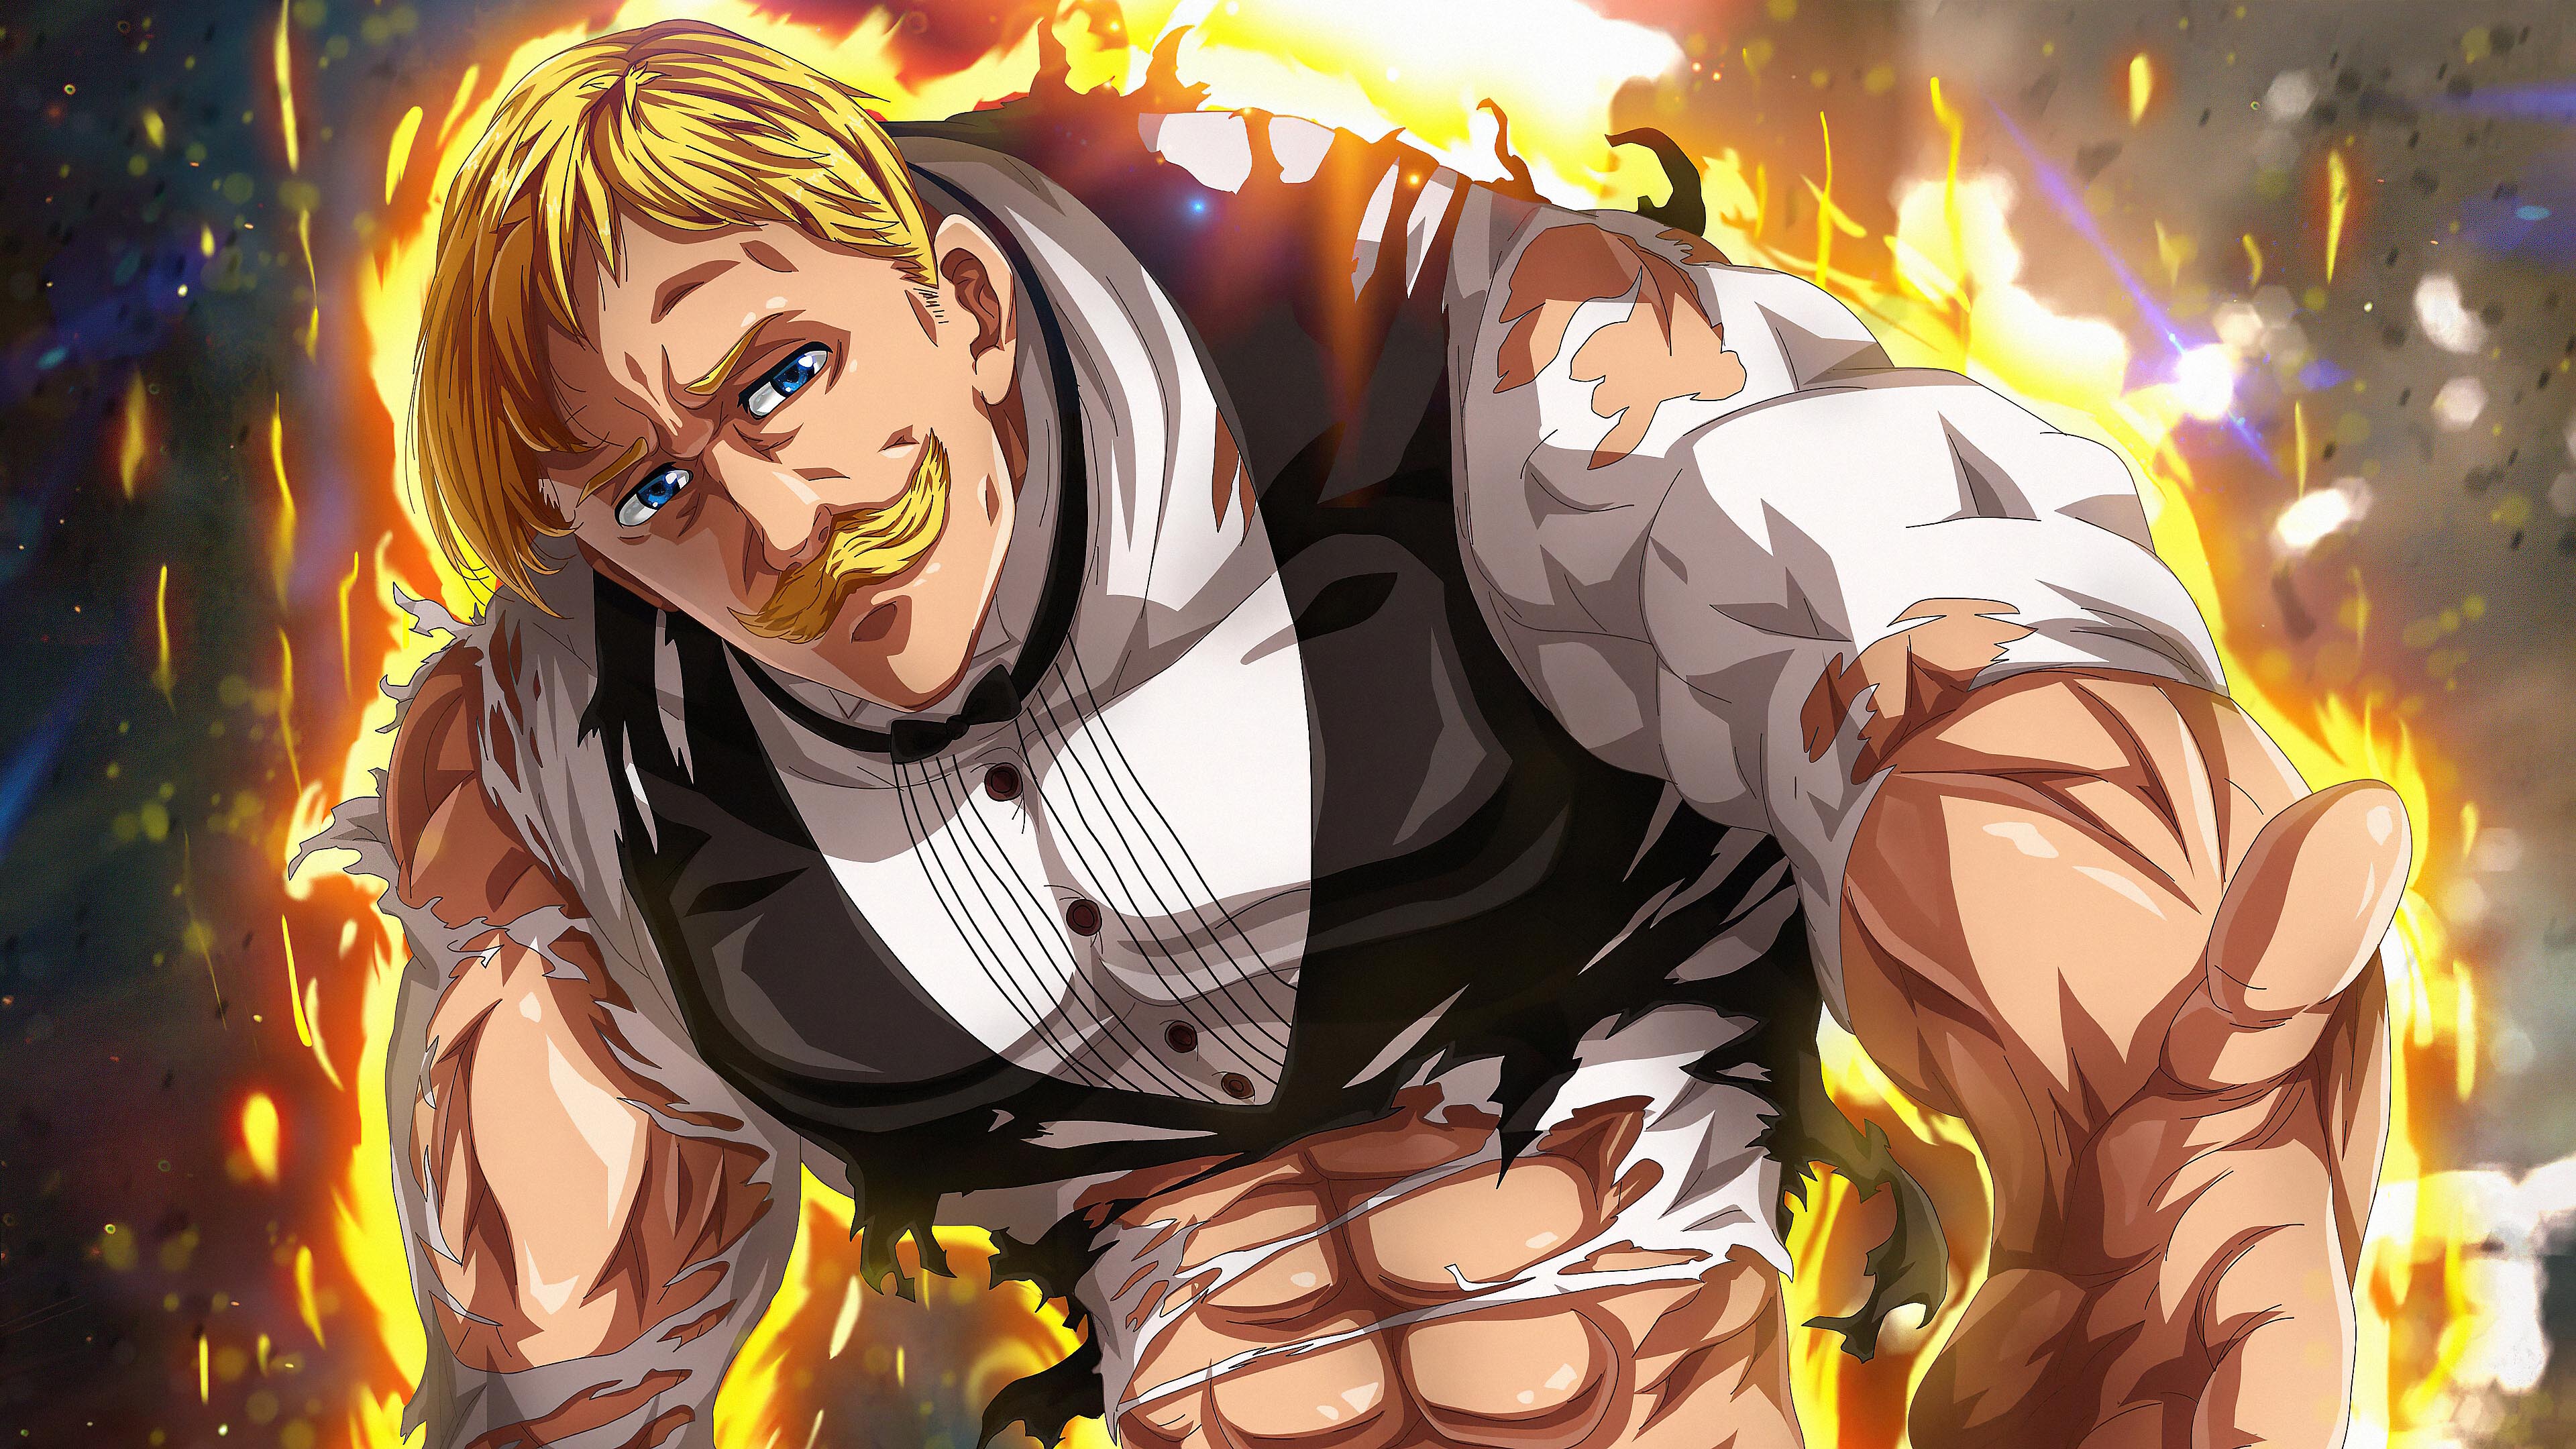 Escanor Nanatsu No Taizai Seven Deadly Sins Anime Boys Anime Anime Men Abs Burning Fire 3840x2160